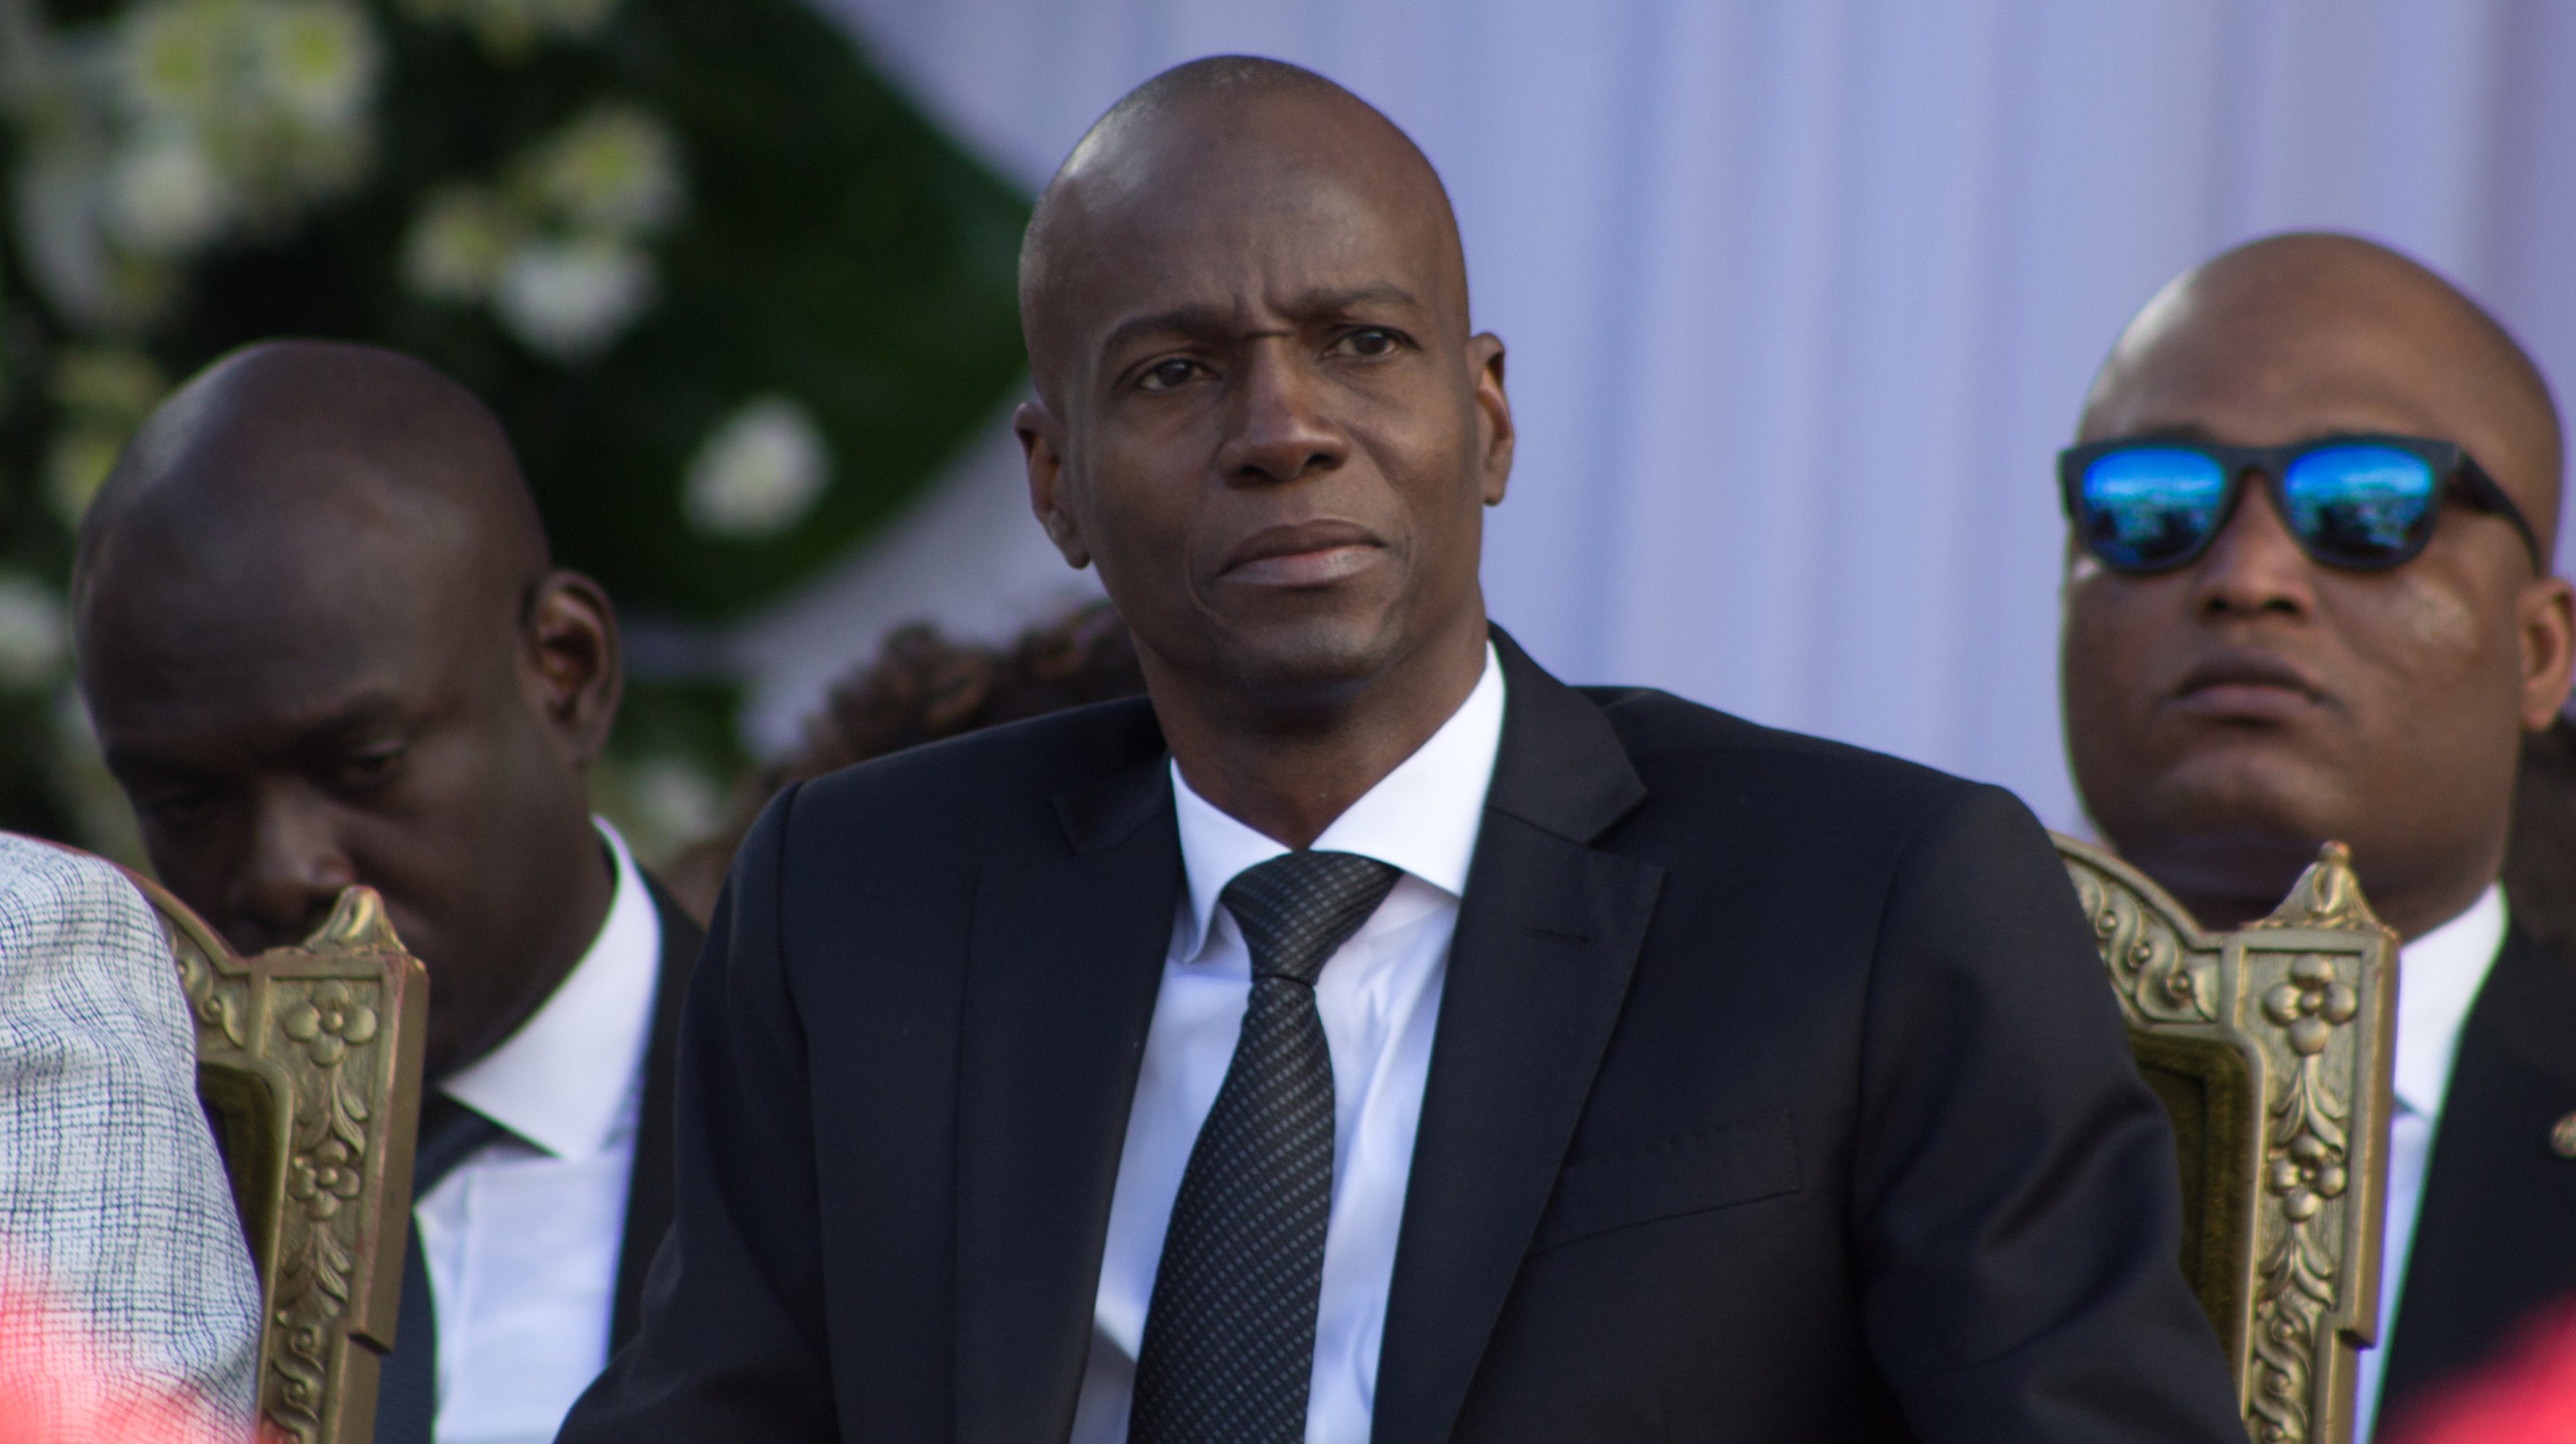 Funeral of former President of Haiti Rene Preval